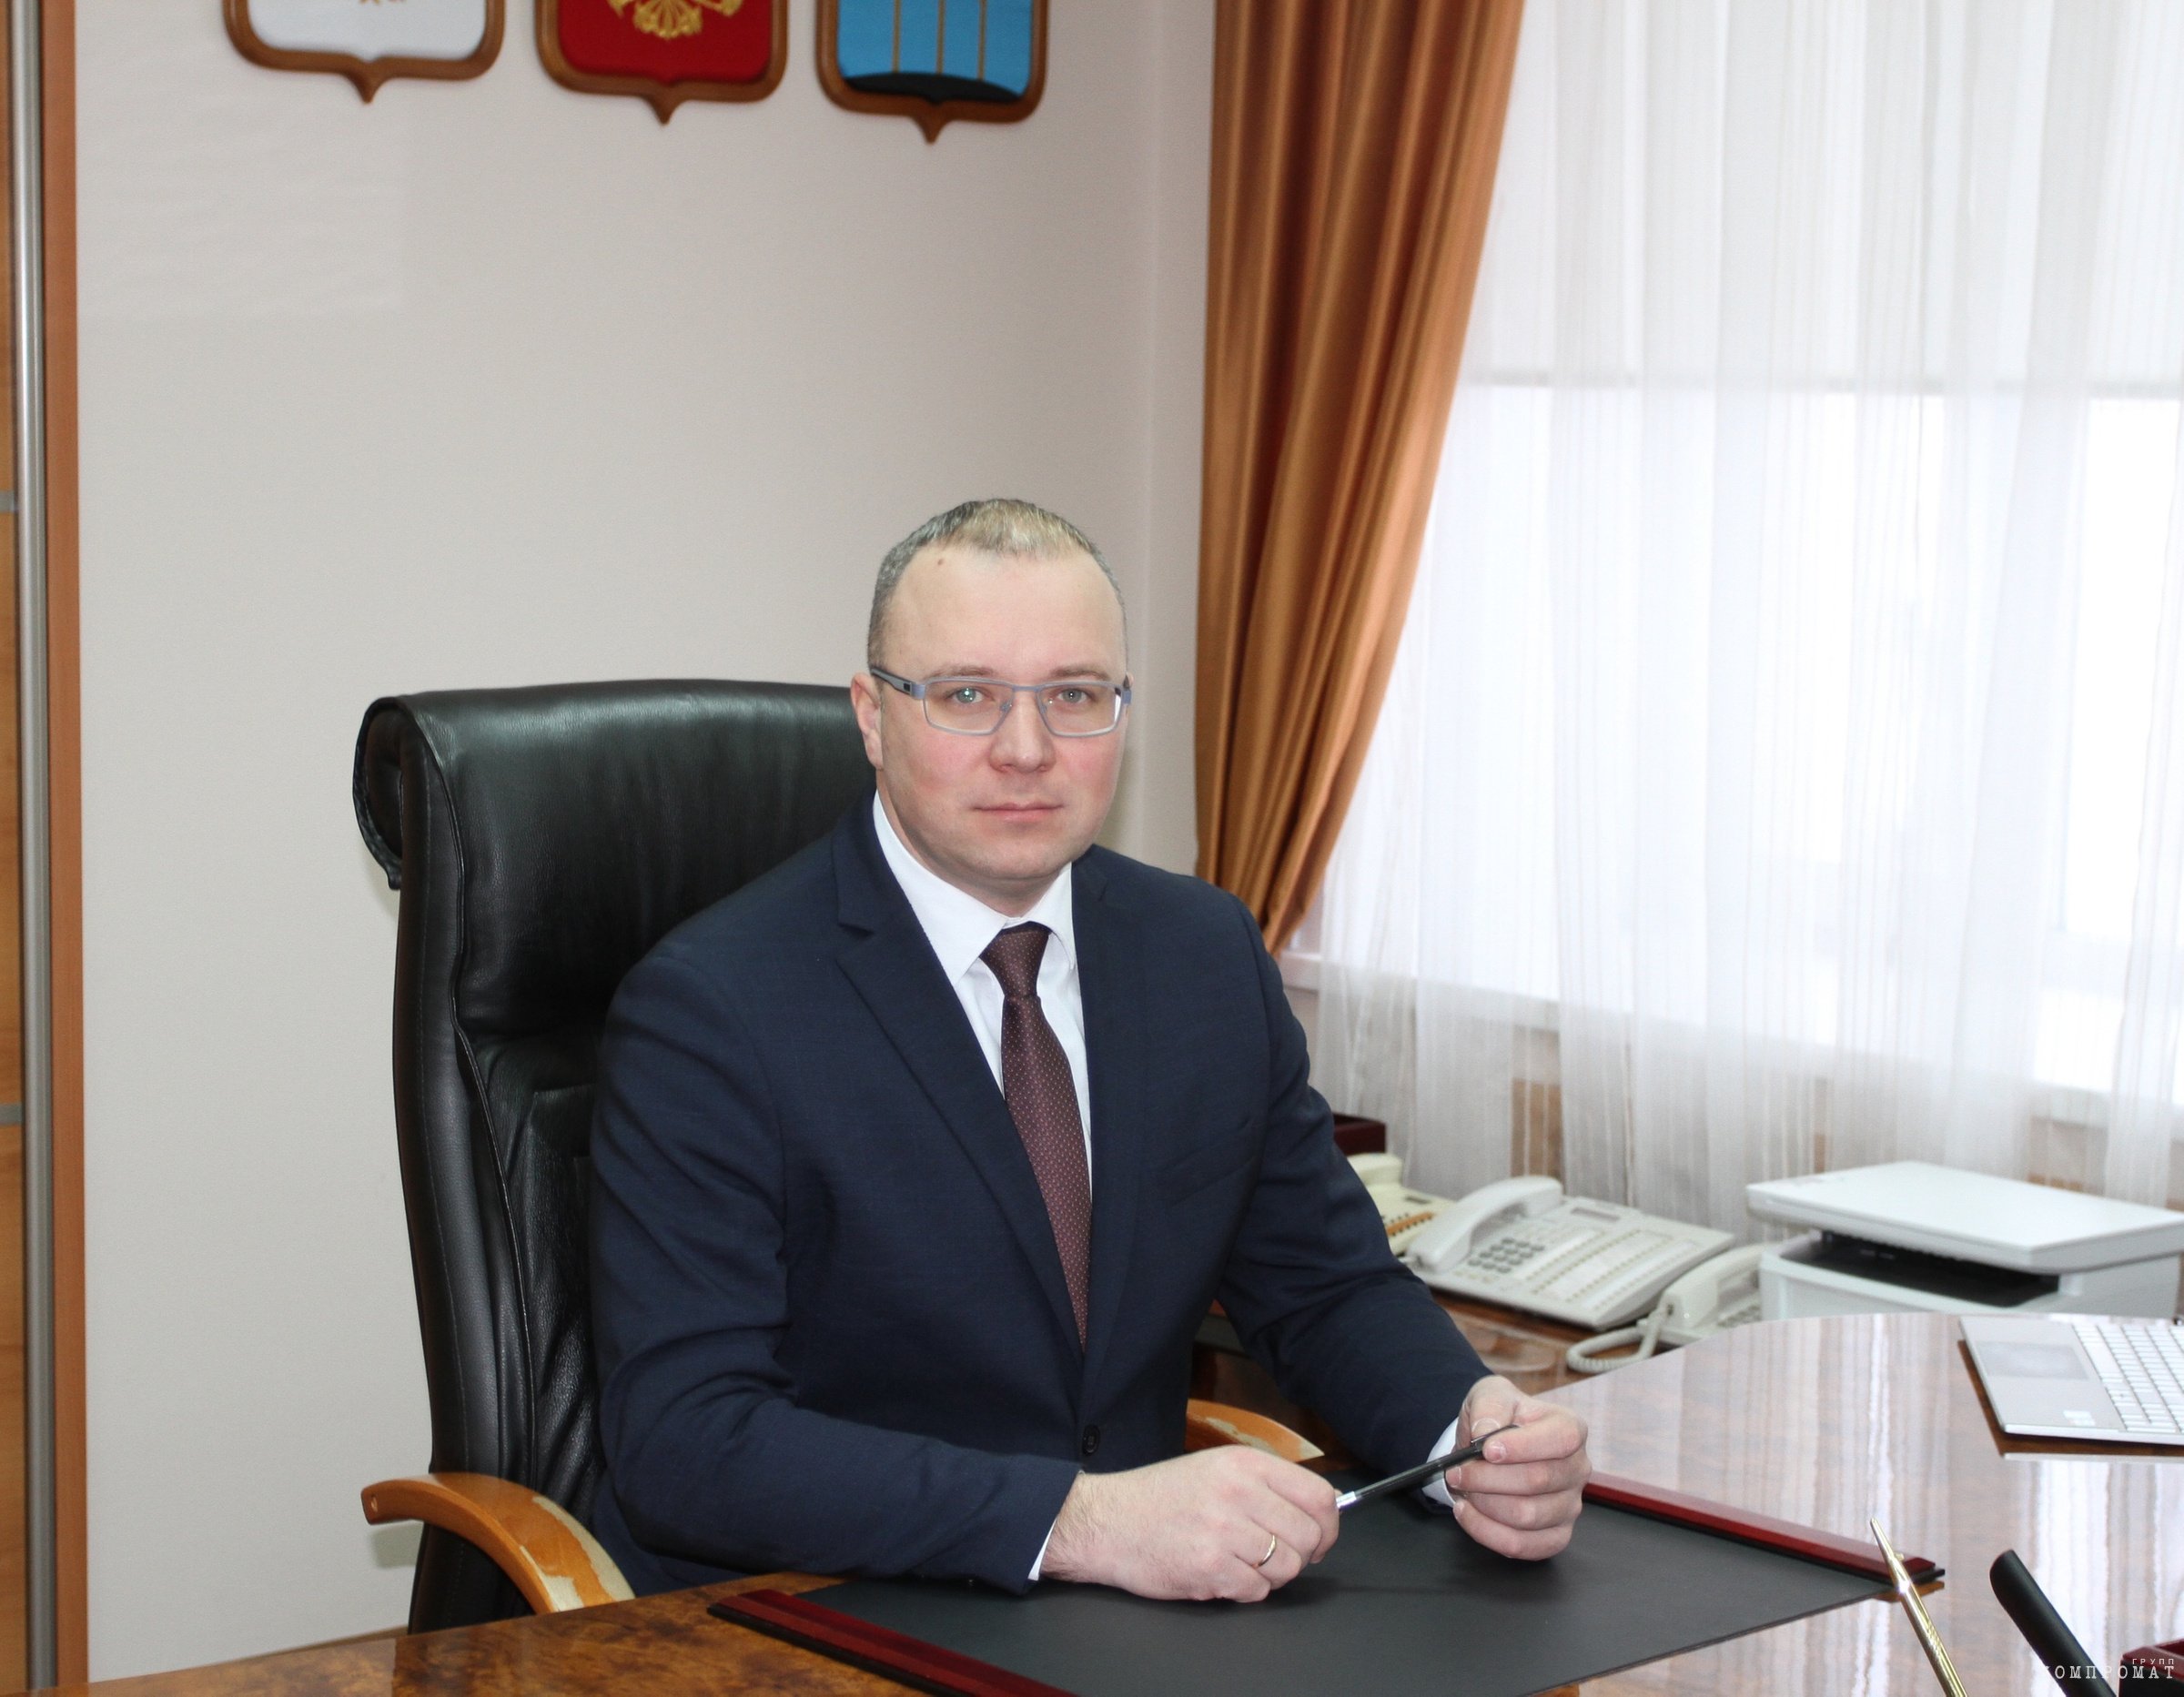 Теперь уже бывший мэр Димитровграда Андрей Большаков